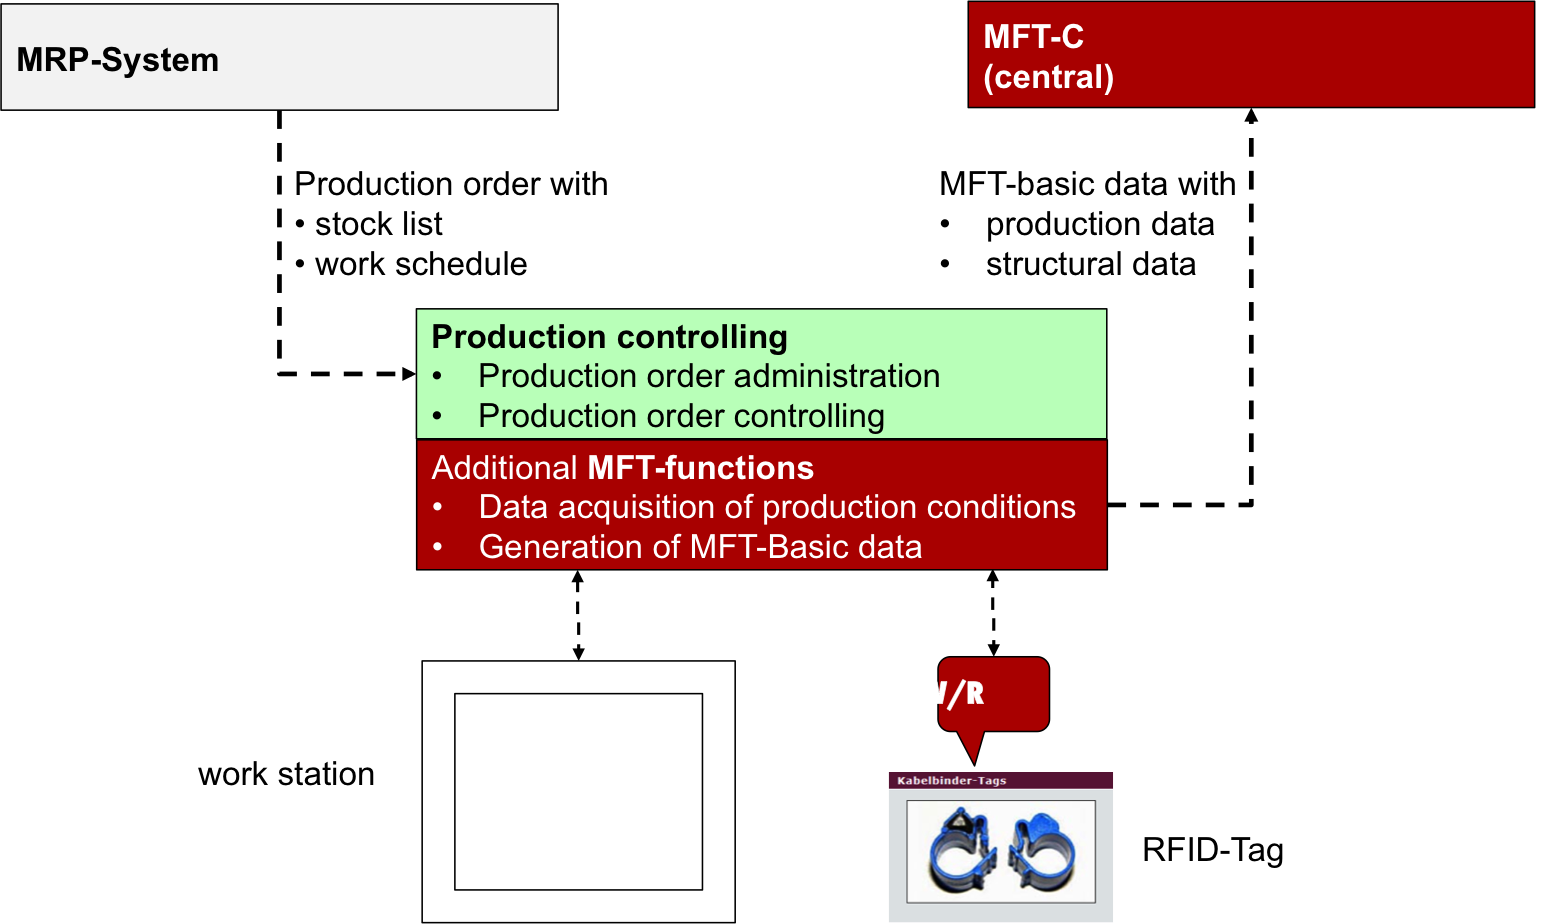 MFT - basis data